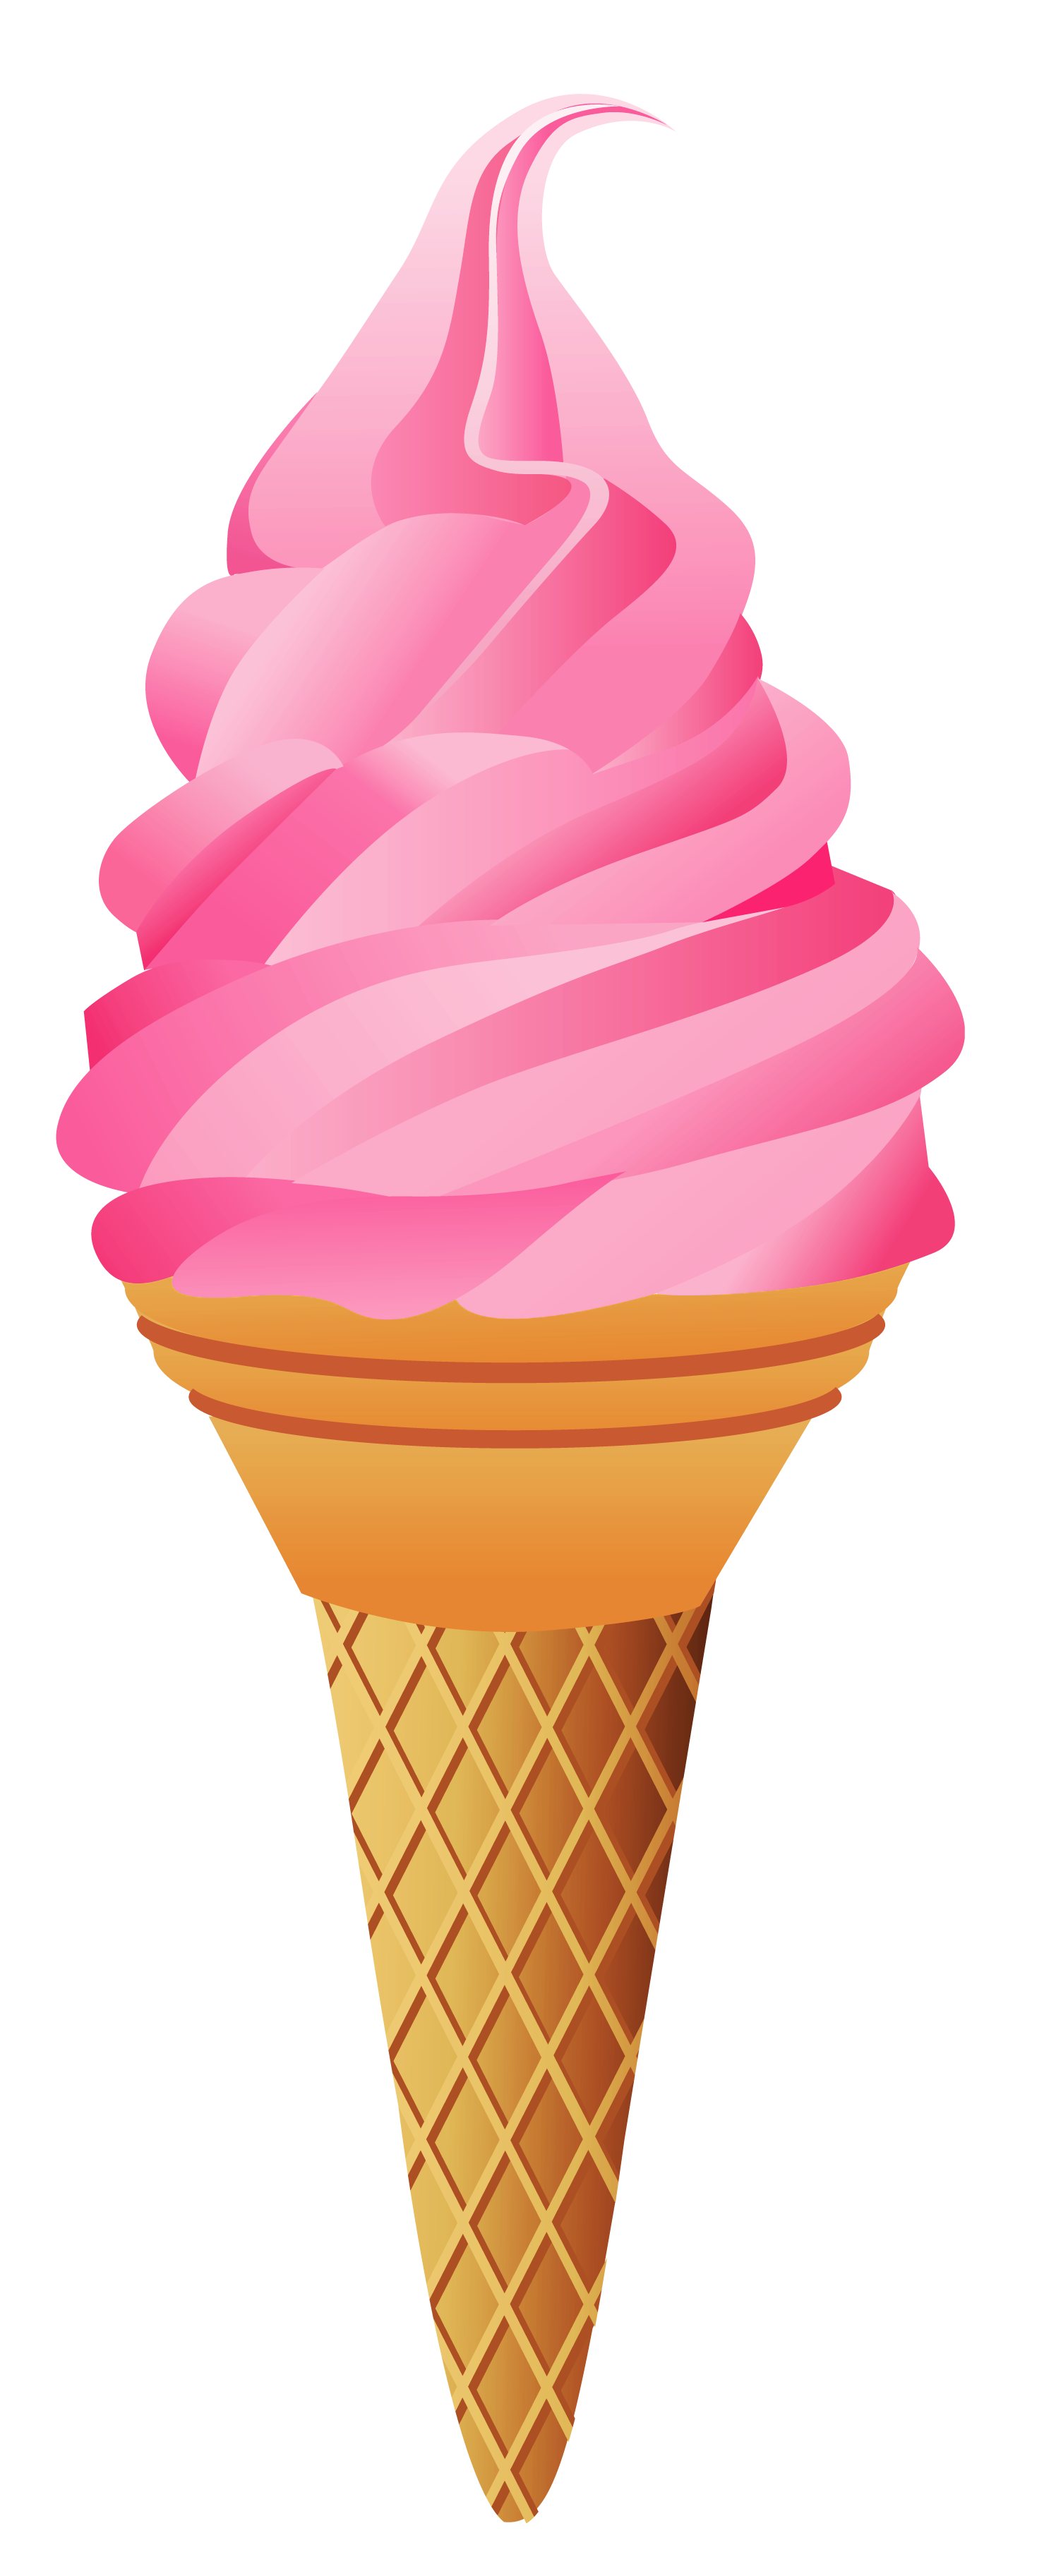 ice cream cone clip art pictures - photo #30